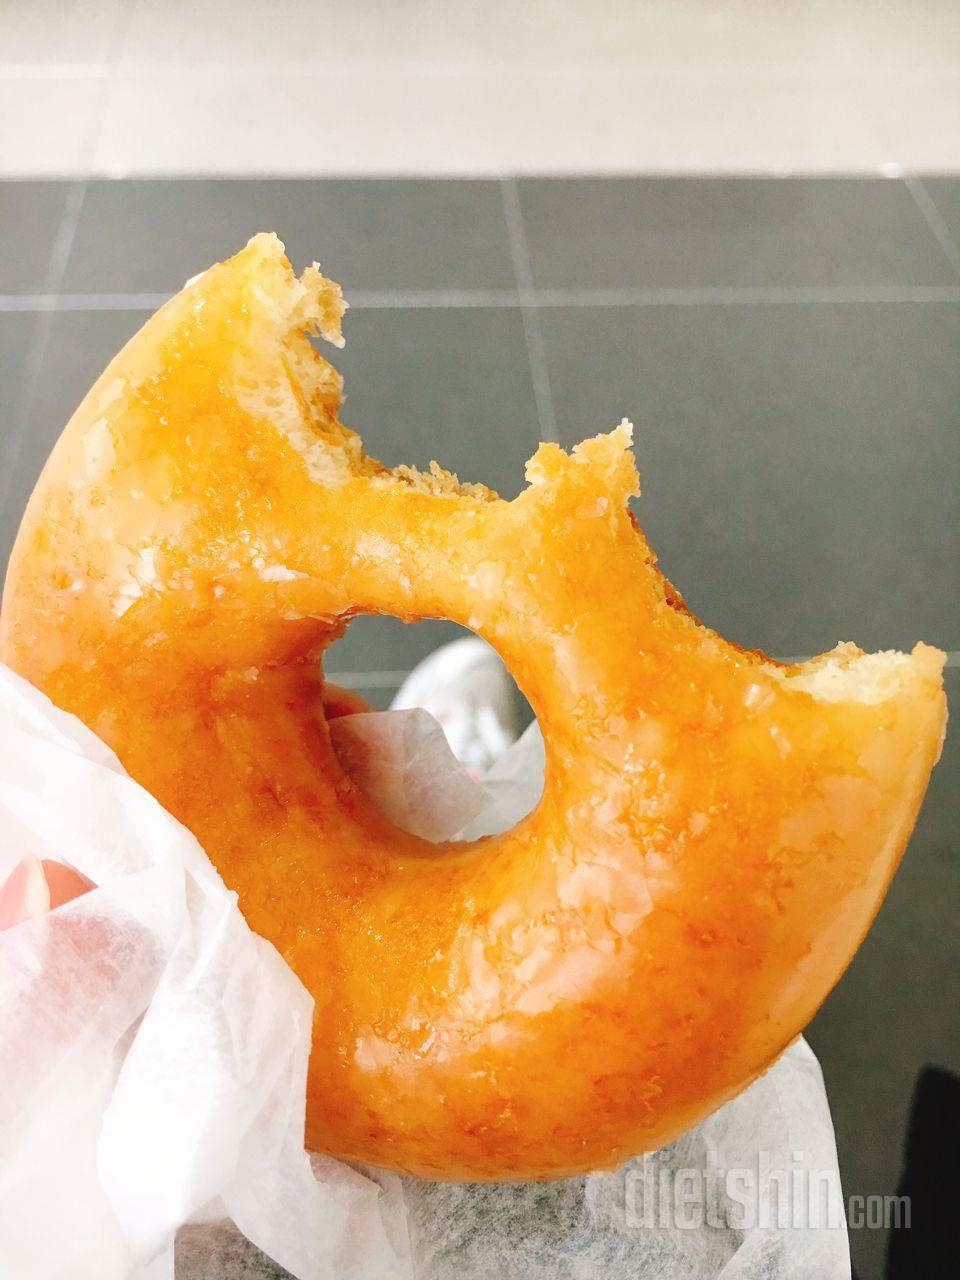 공짜 도넛의 행복!